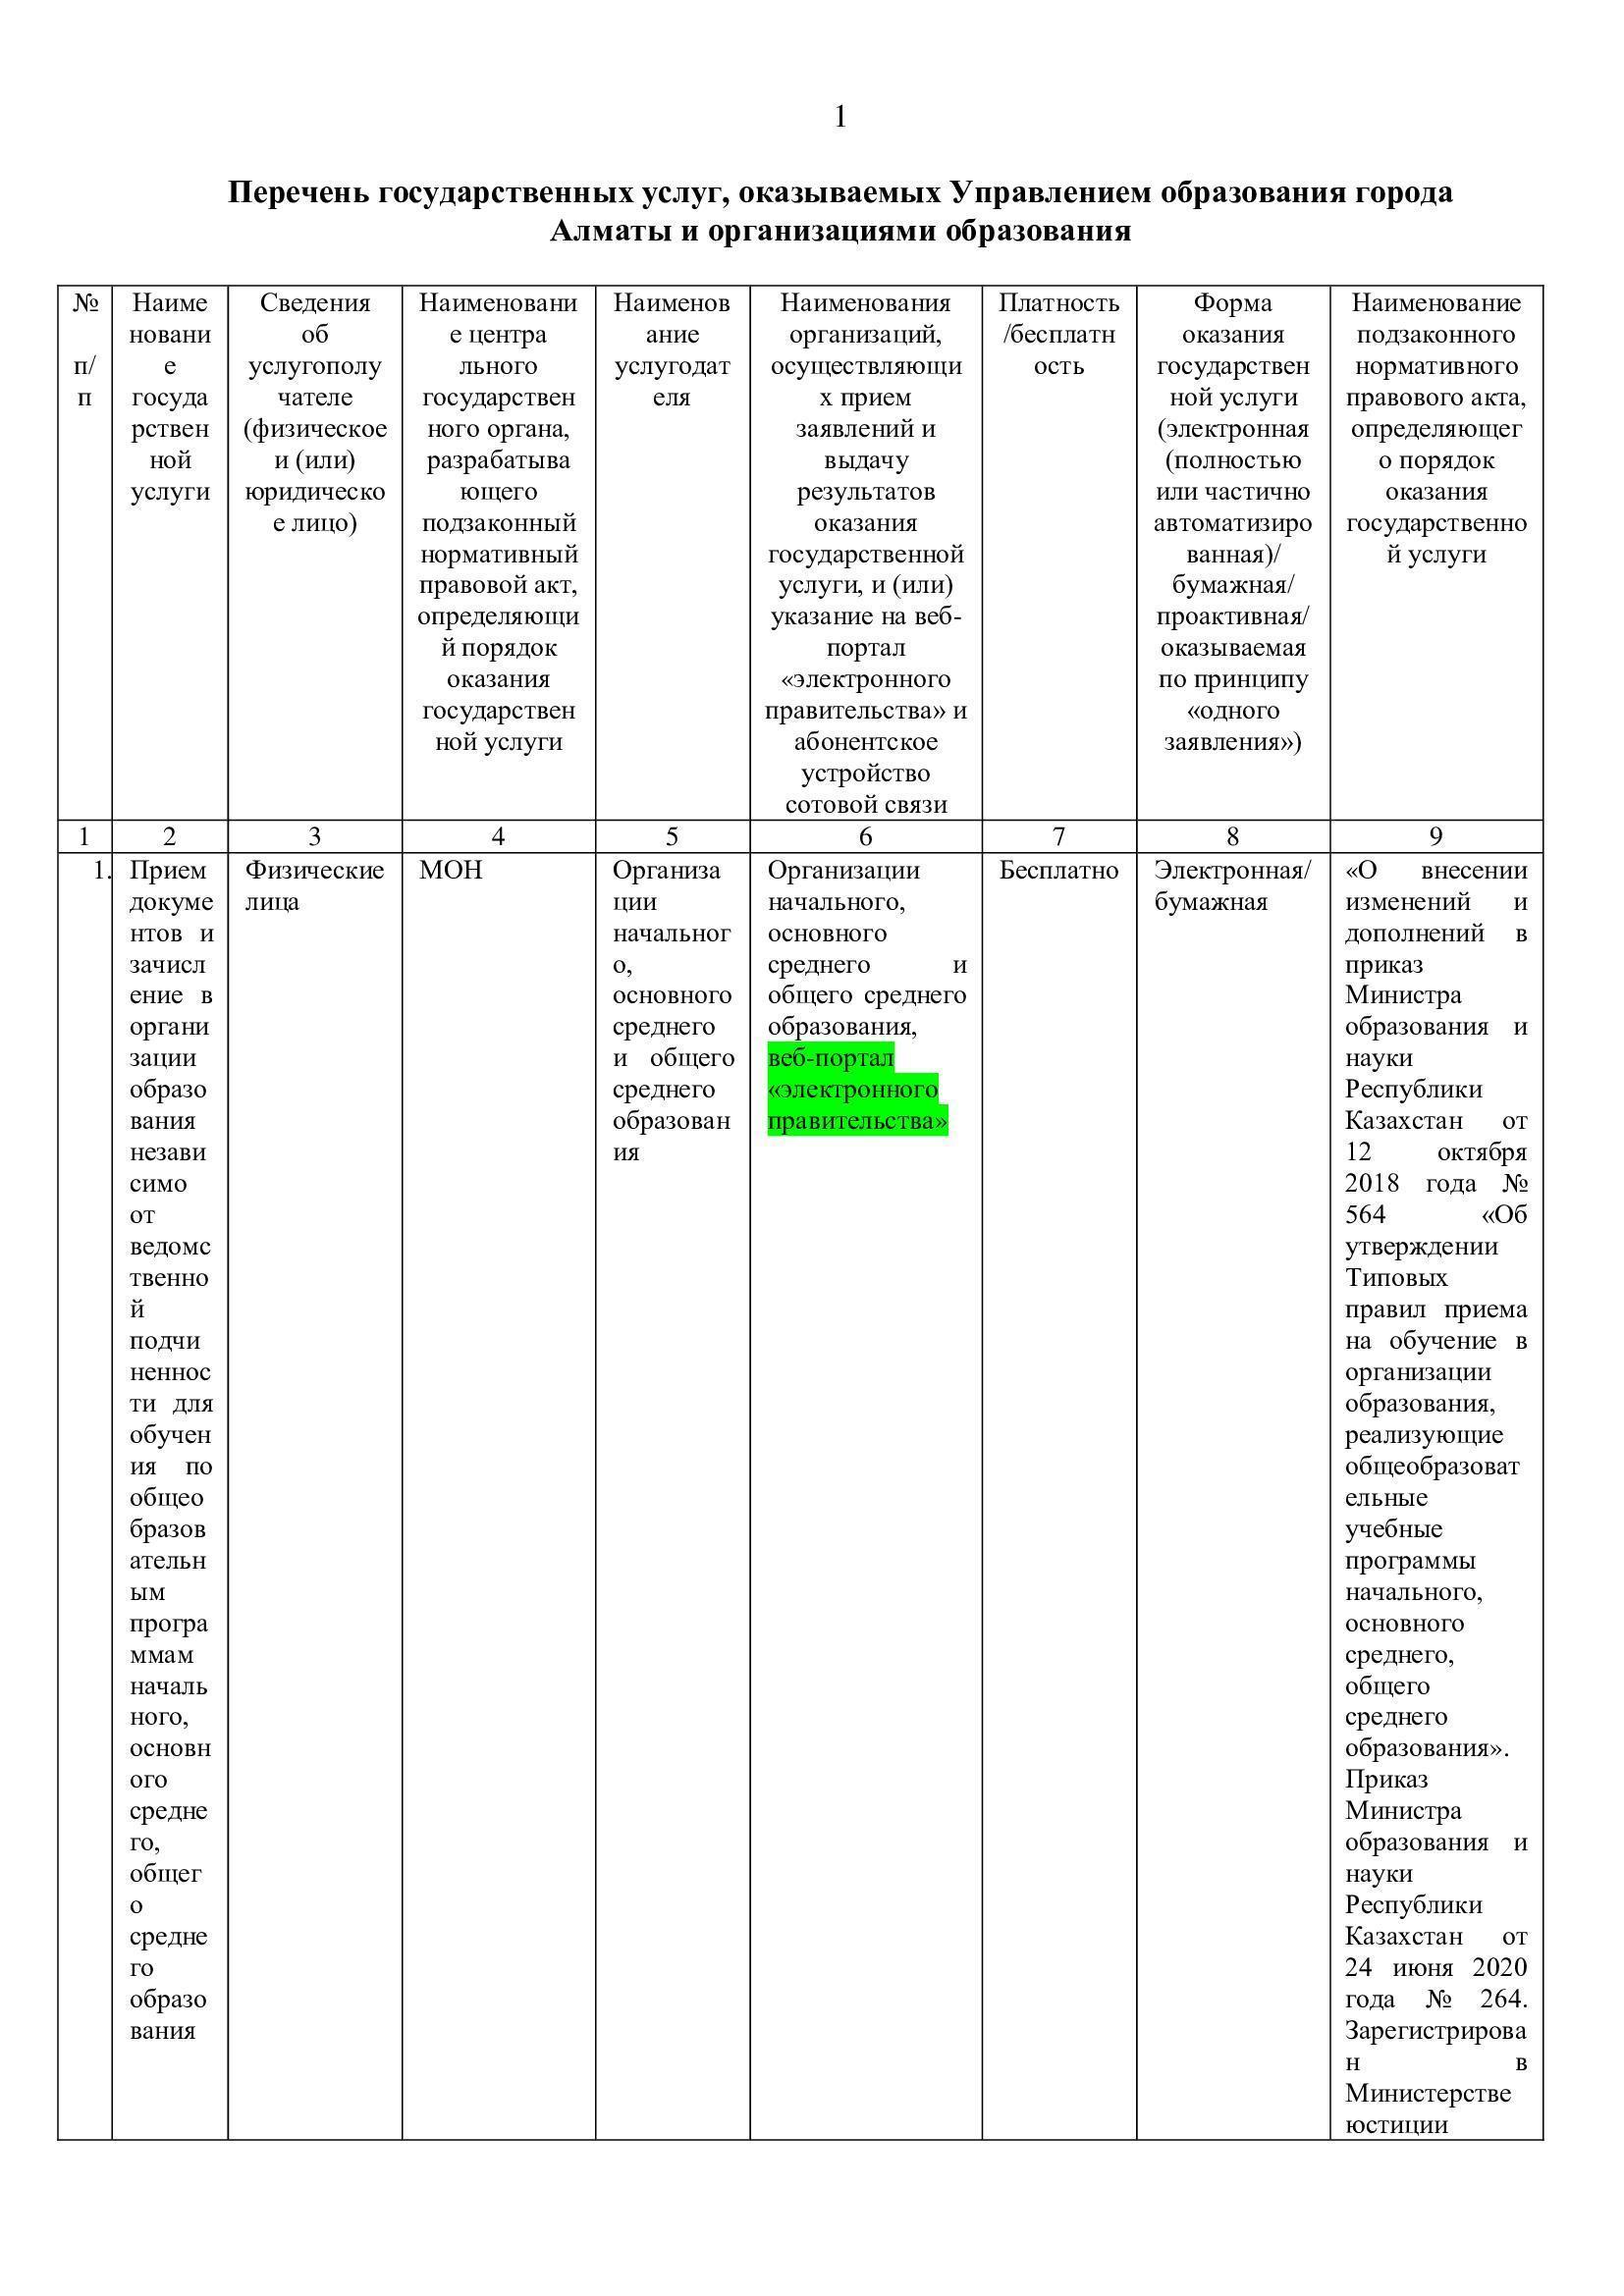 Перечень государственных услуг, оказываемых Управлением образования города Алматы и организациями образования